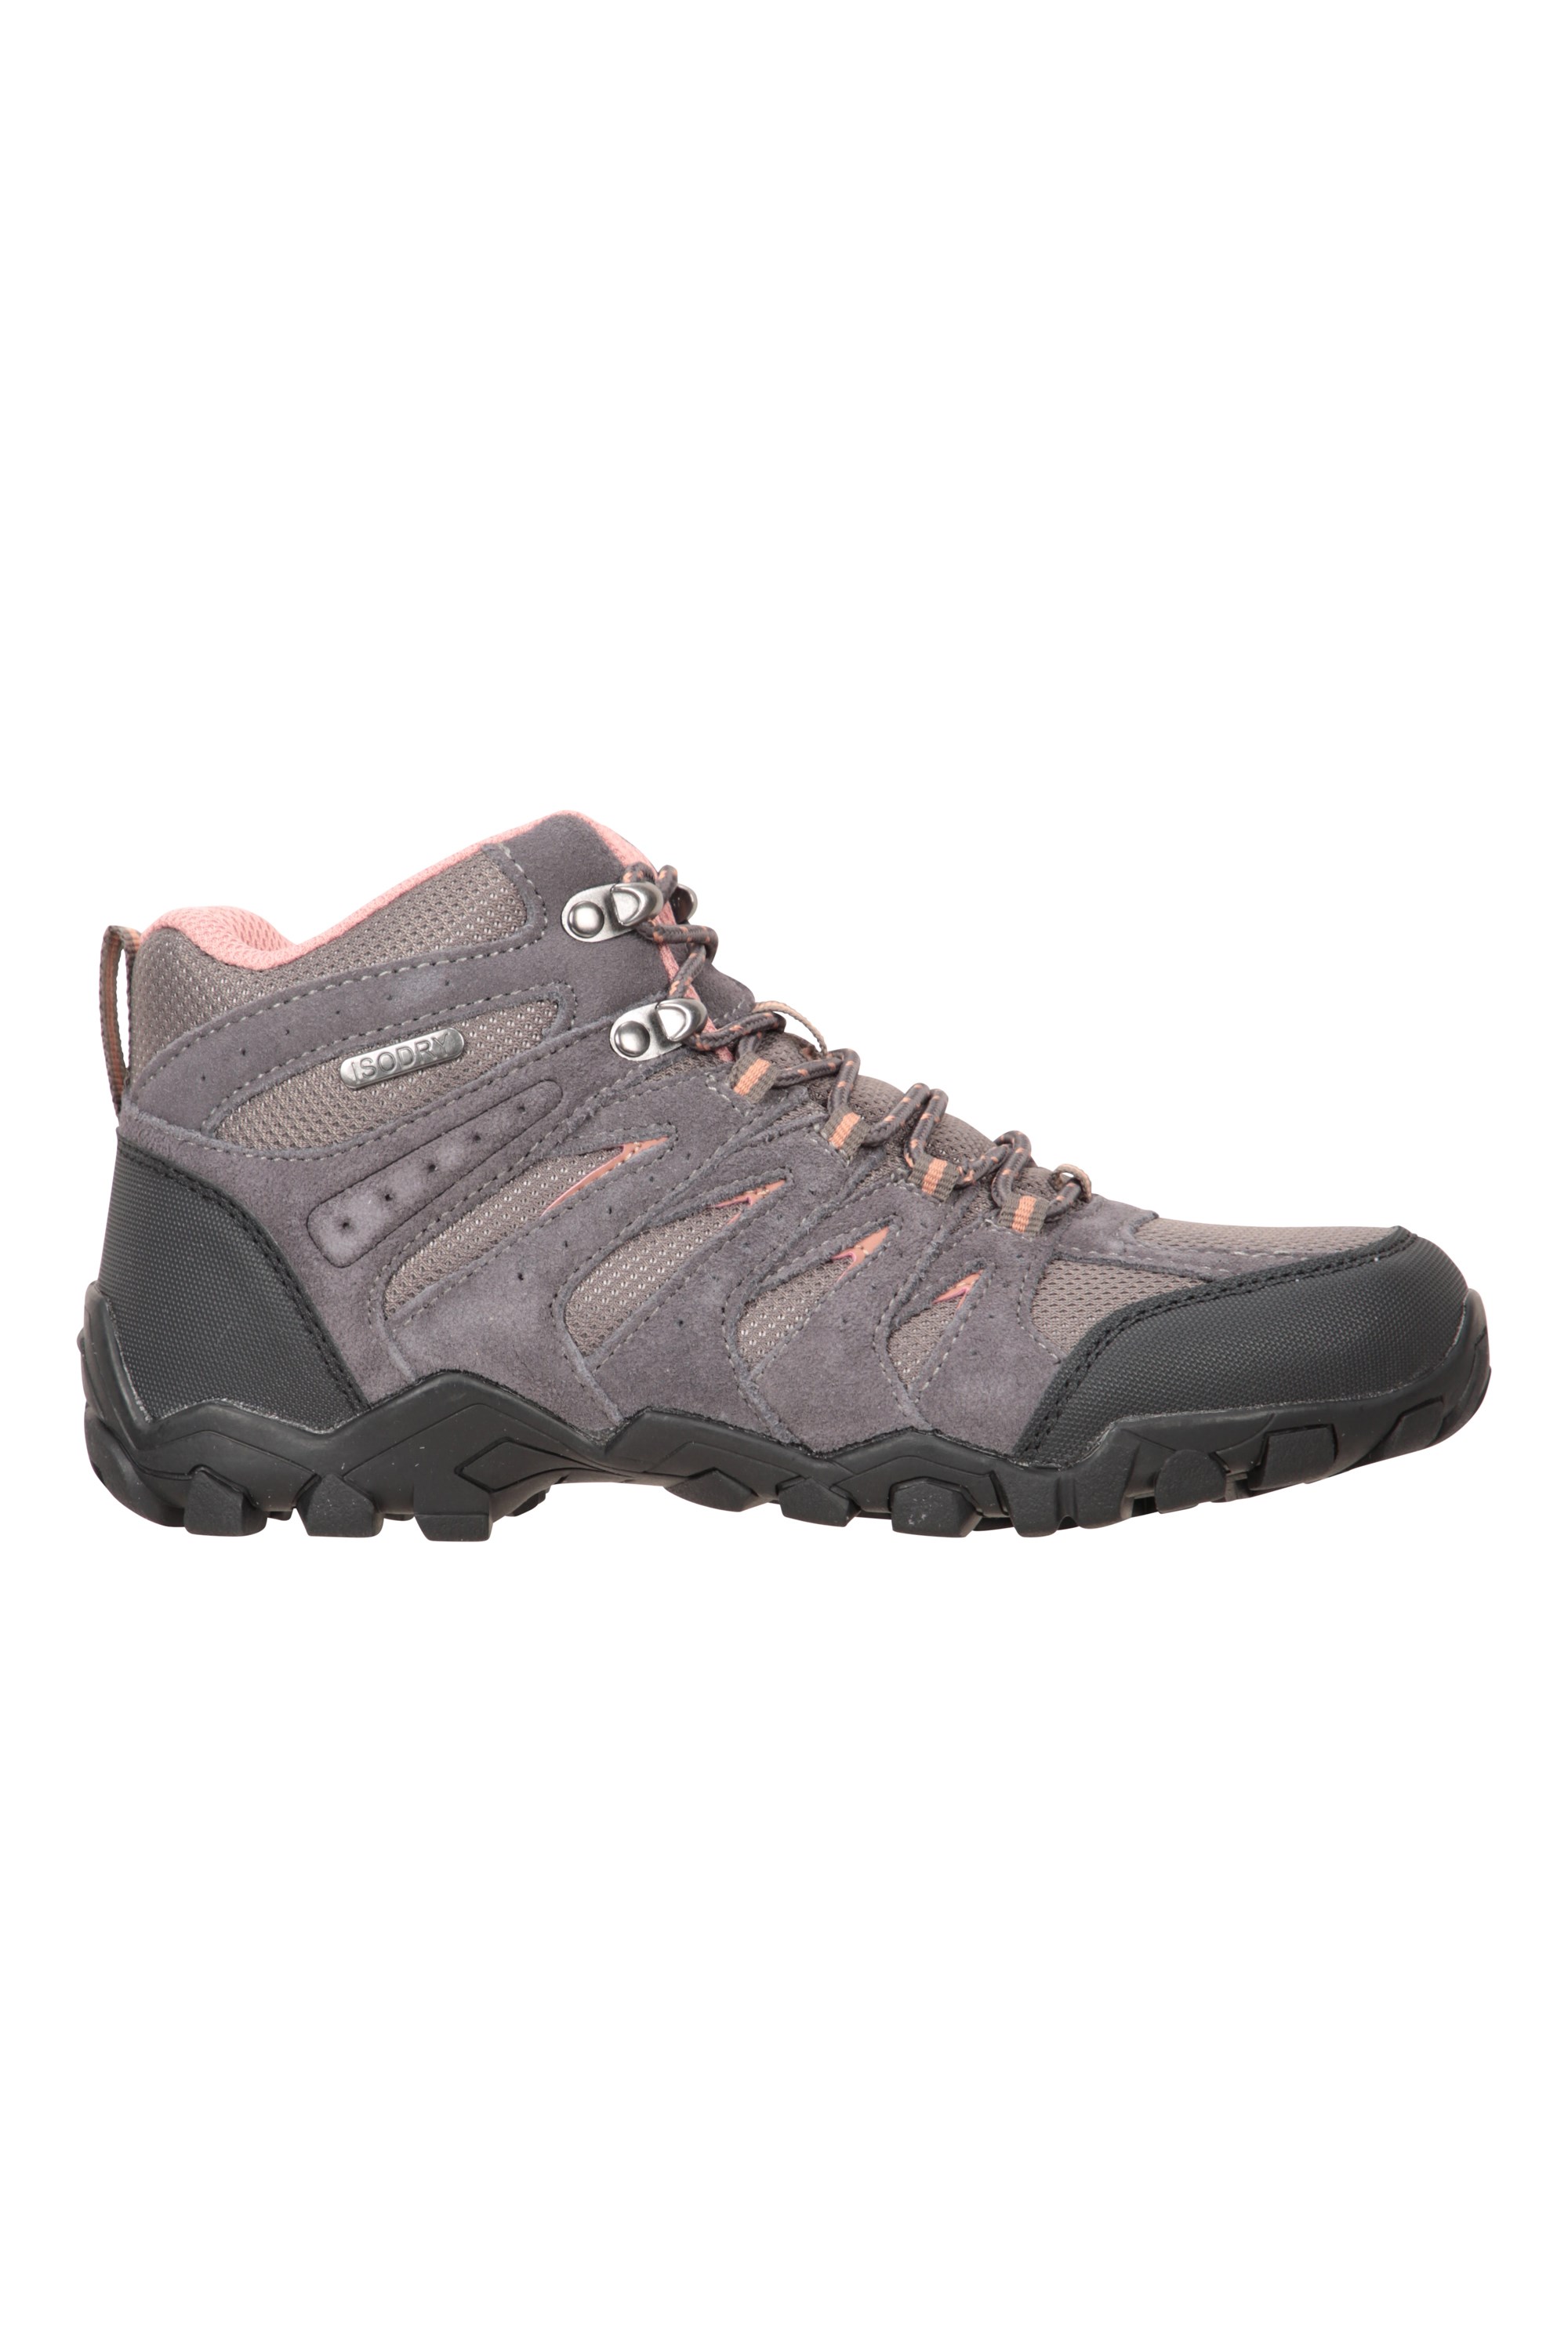 Mountain Warehouse Belfour Womens Waterproof Hiking Shoes 